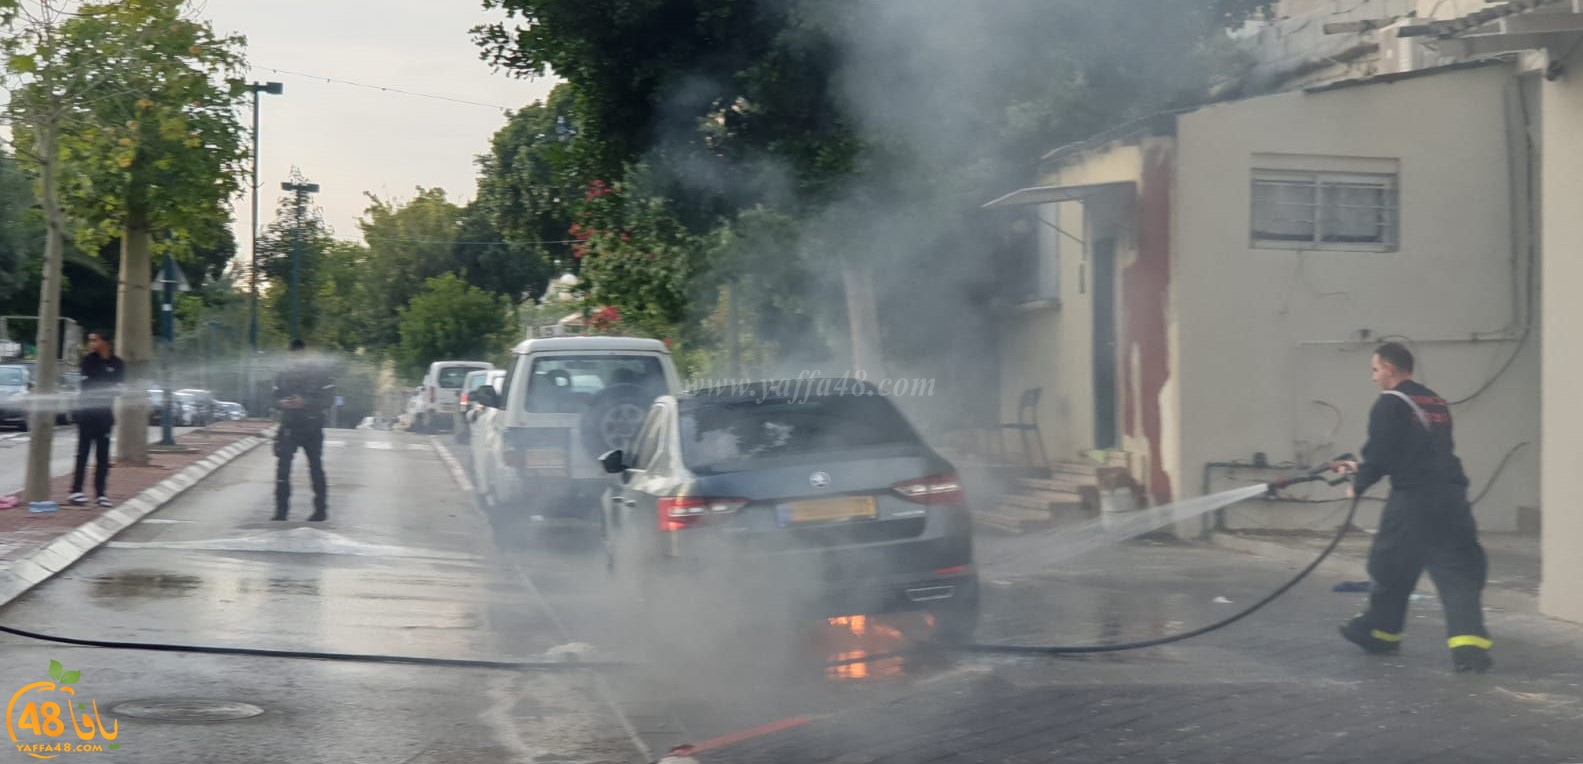  يافا: احتراق سيارة في المدينة والاطفائية تهرع للمكان